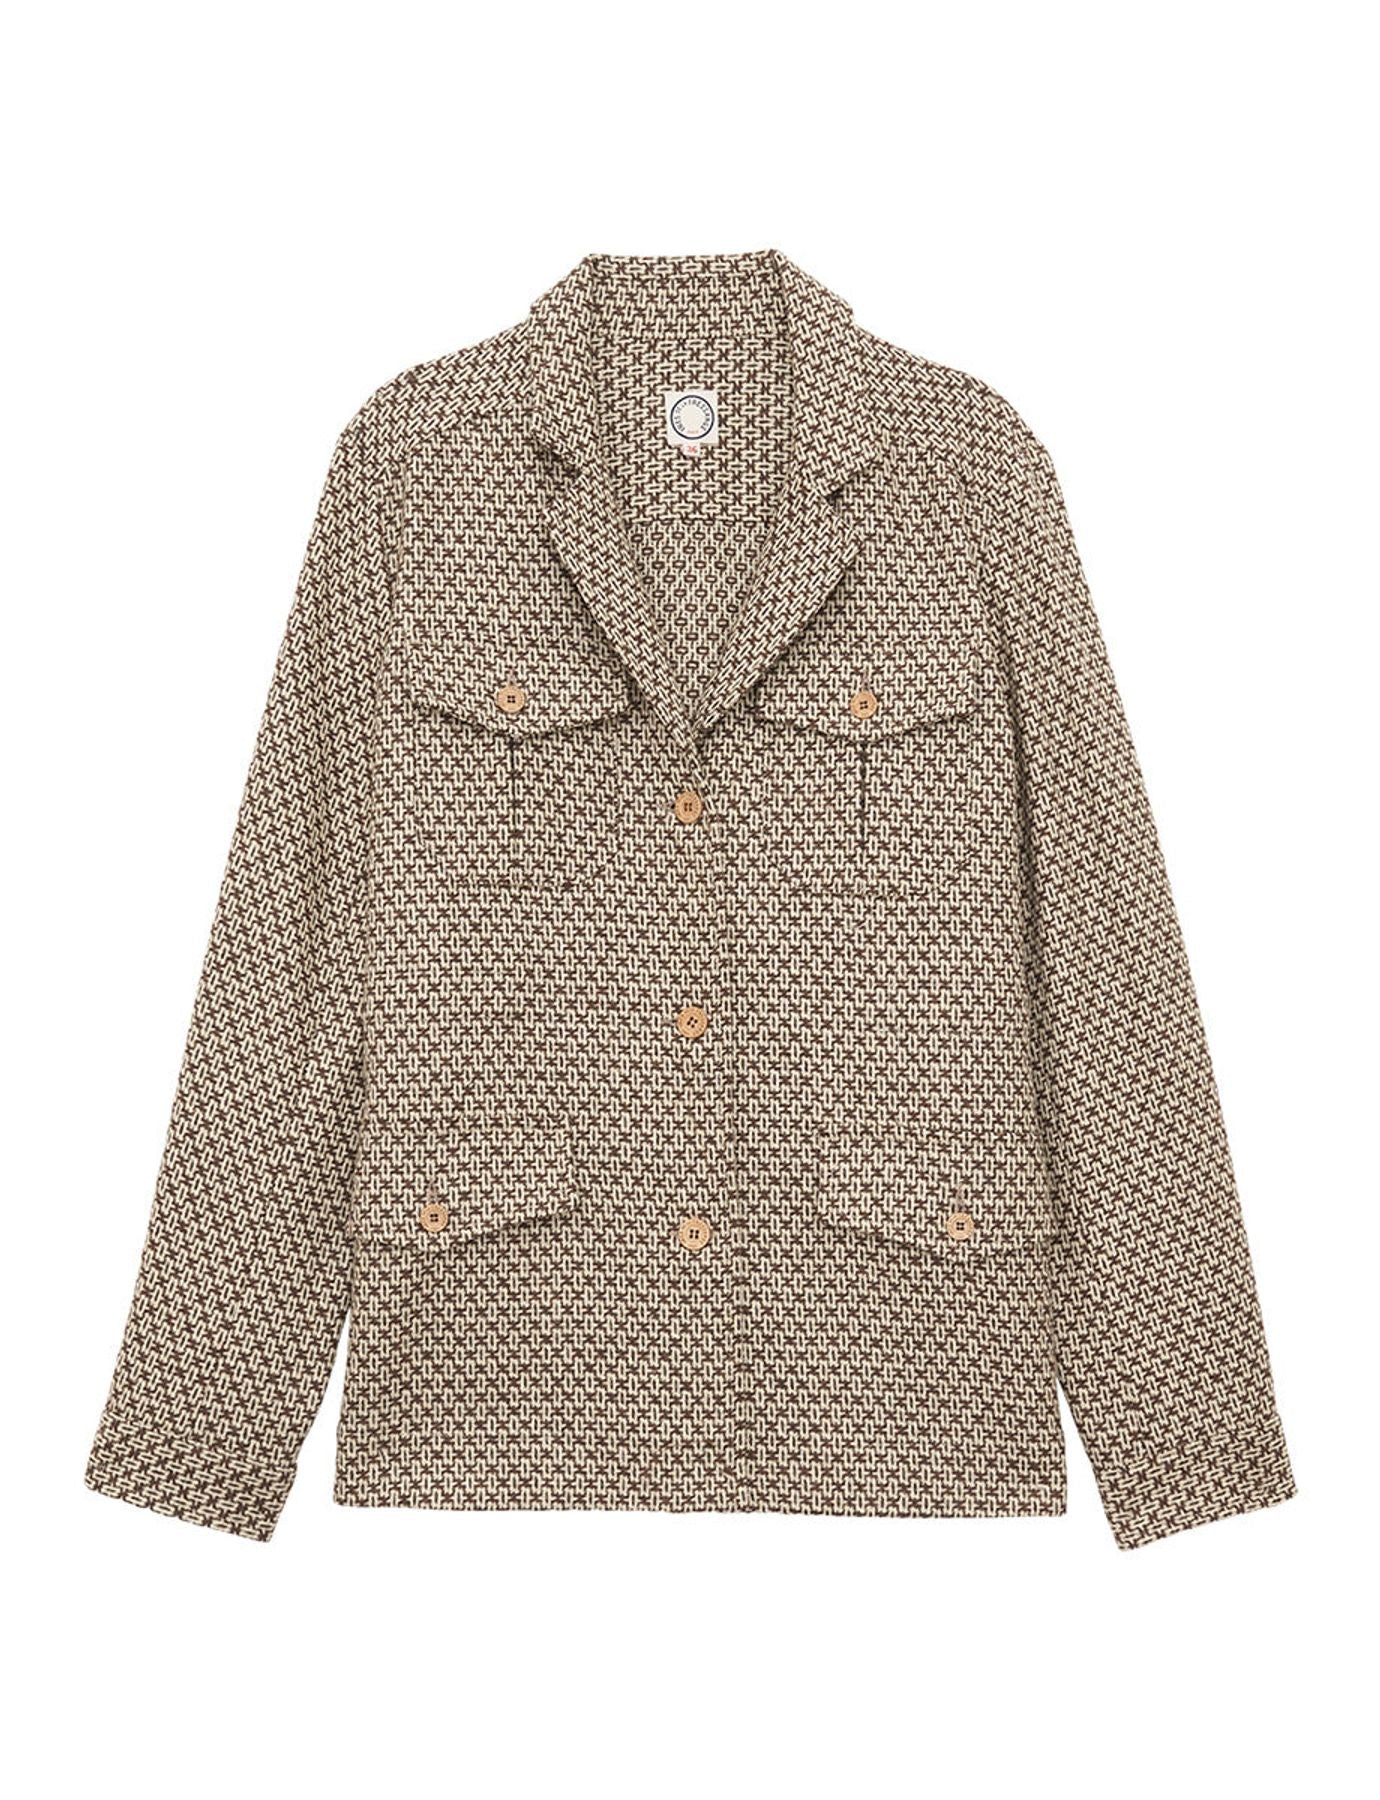 jacket-flipper-brown-ecru-wool